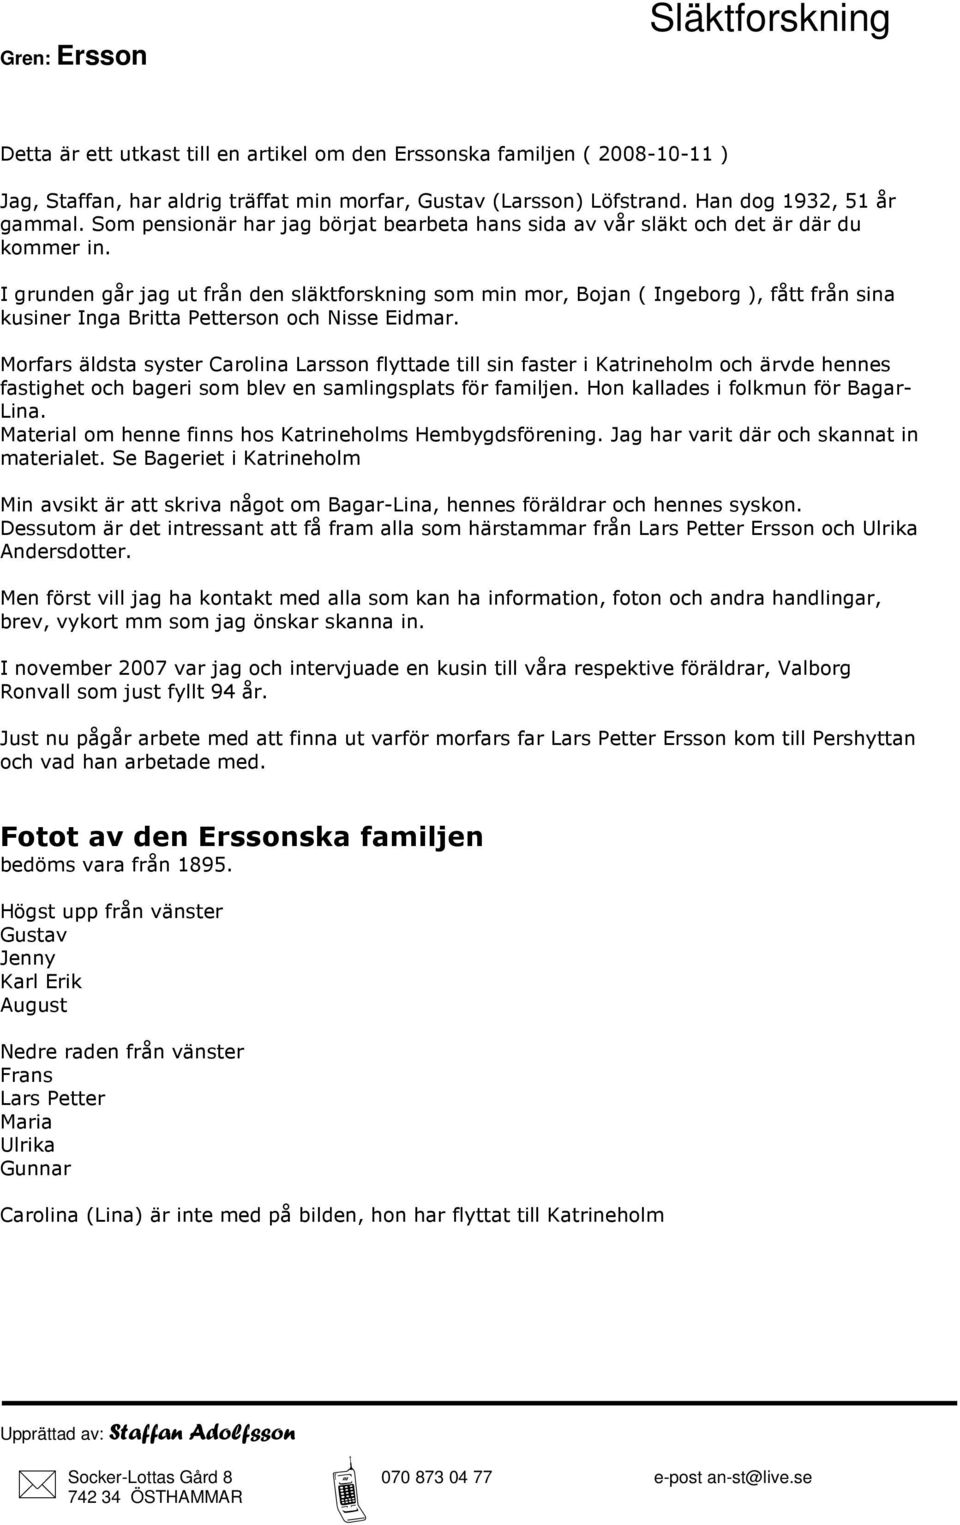 Släktforskning. Gren: Ersson. Upprättad av: Staffan Adolfsson.  Socker-Lottas Gård e-post ÖSTHAMMAR - PDF Free Download